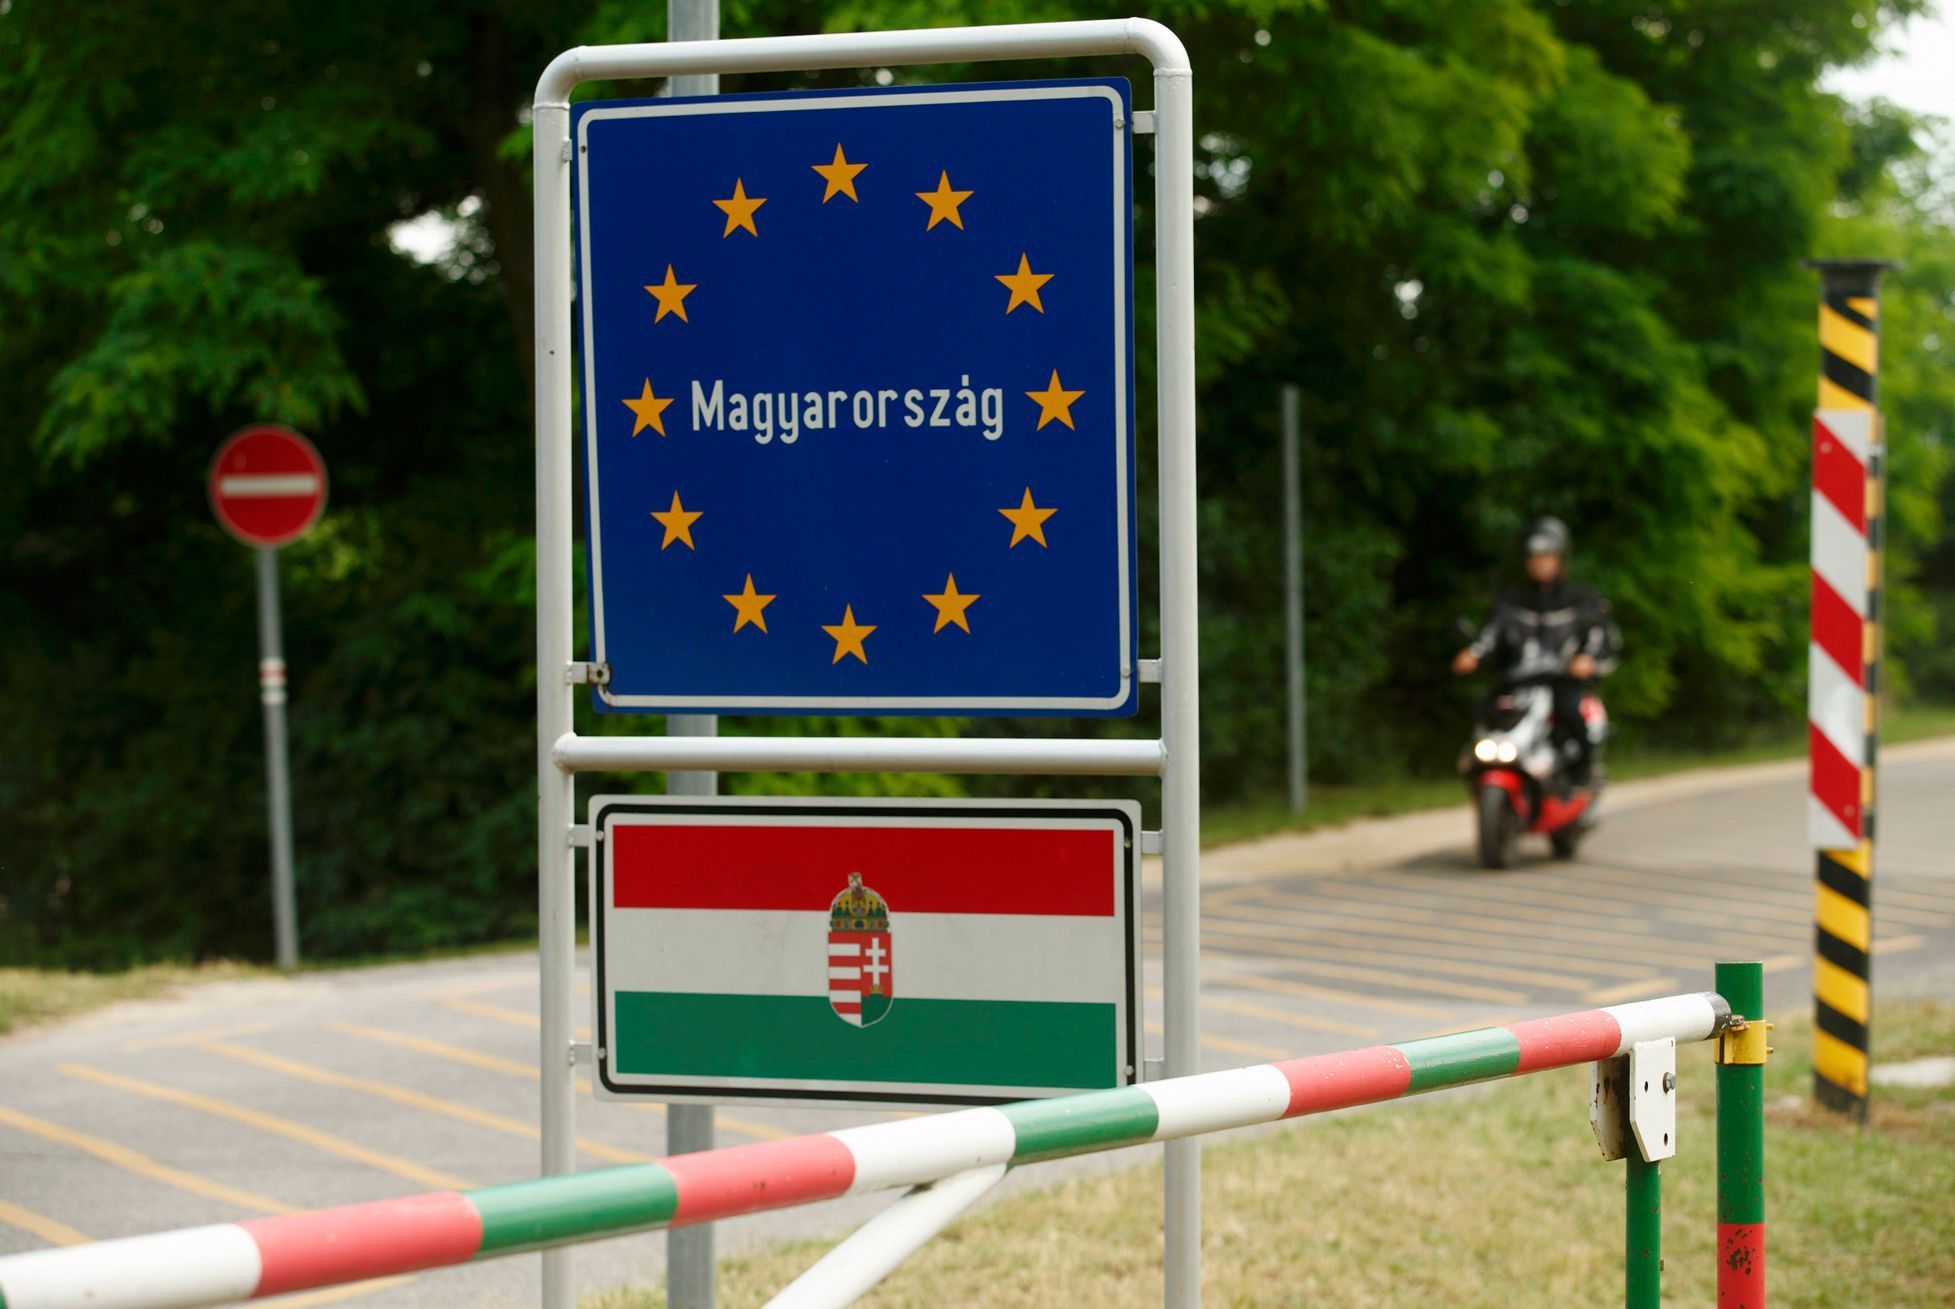 Běženci po přechodu srbsko-maďarské hranice u města Asotthalom